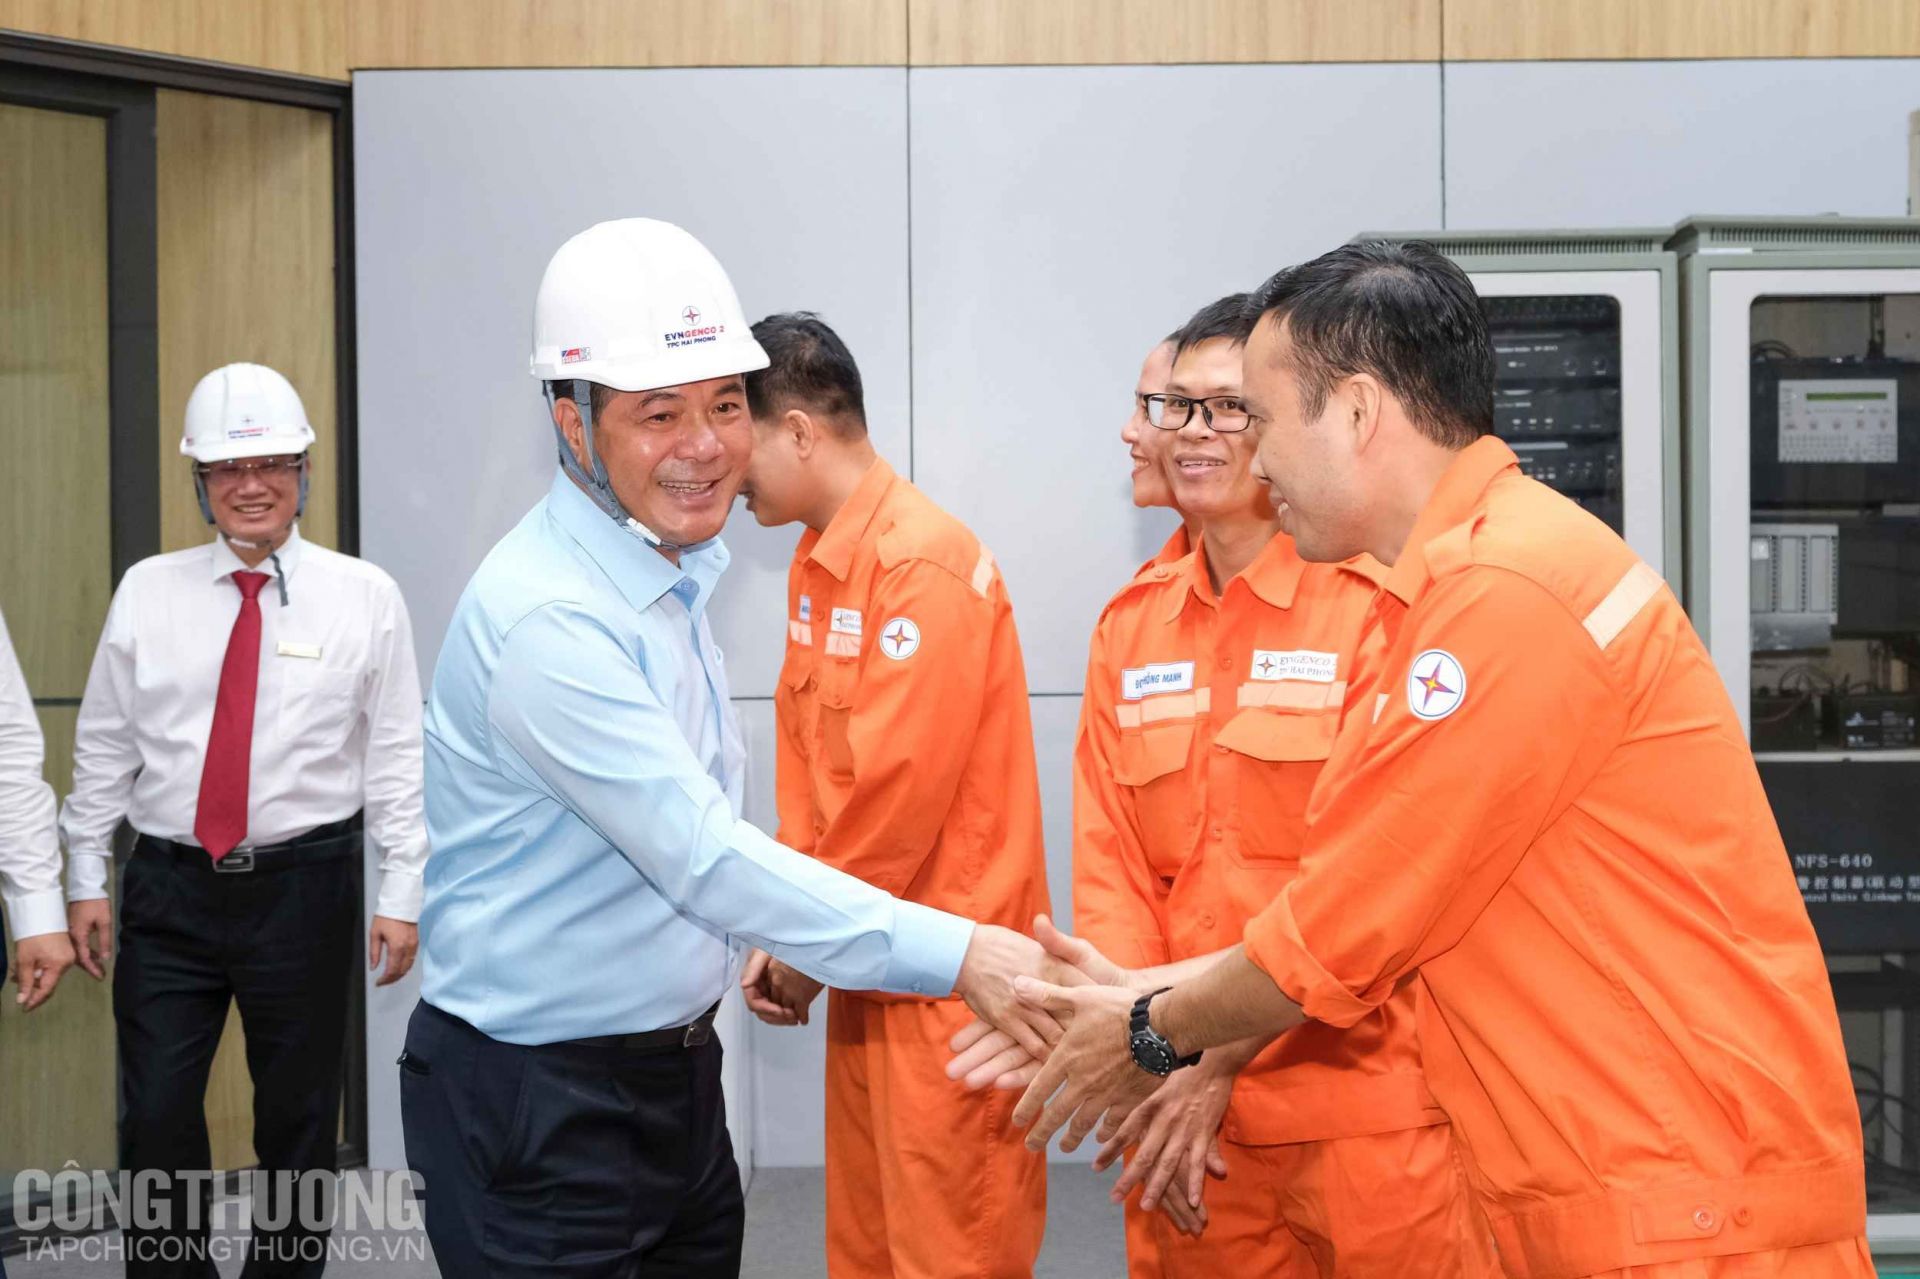 Bộ trưởng Nguyễn Hồng Diên hỏi thăm và tặng quà động viên cán bộ, người lao động tại Nhiệt điện Hải Phòng